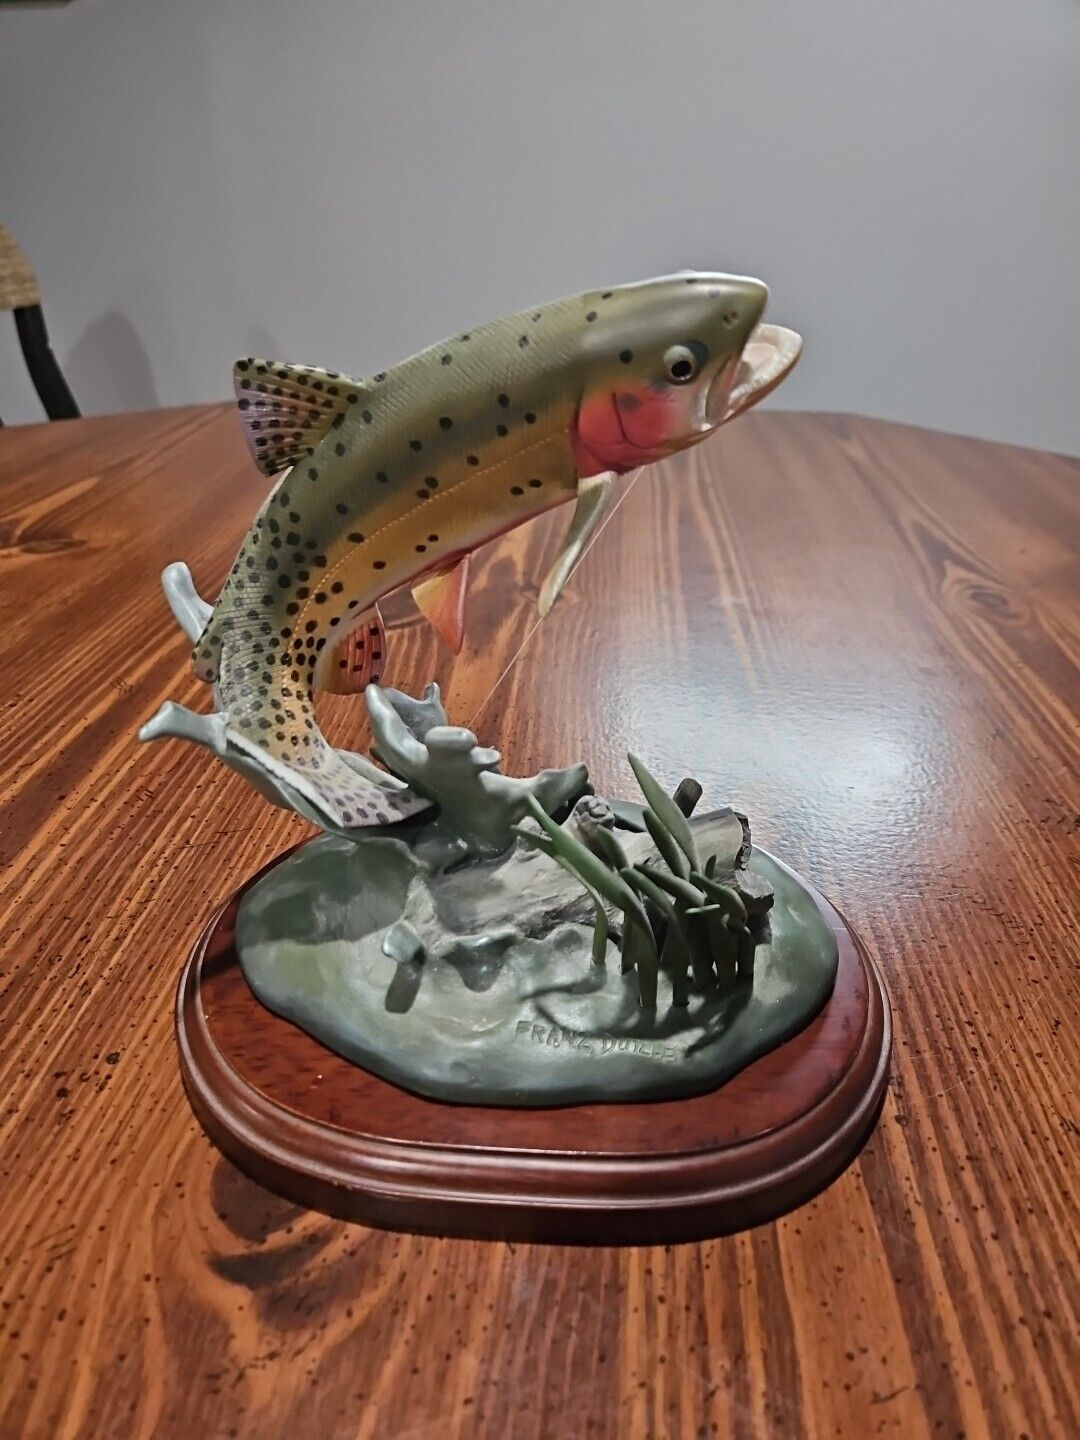 Colorado Sunset Danbury Mint Trout Treasures Franz Dutzler Fly Fish Sculpture